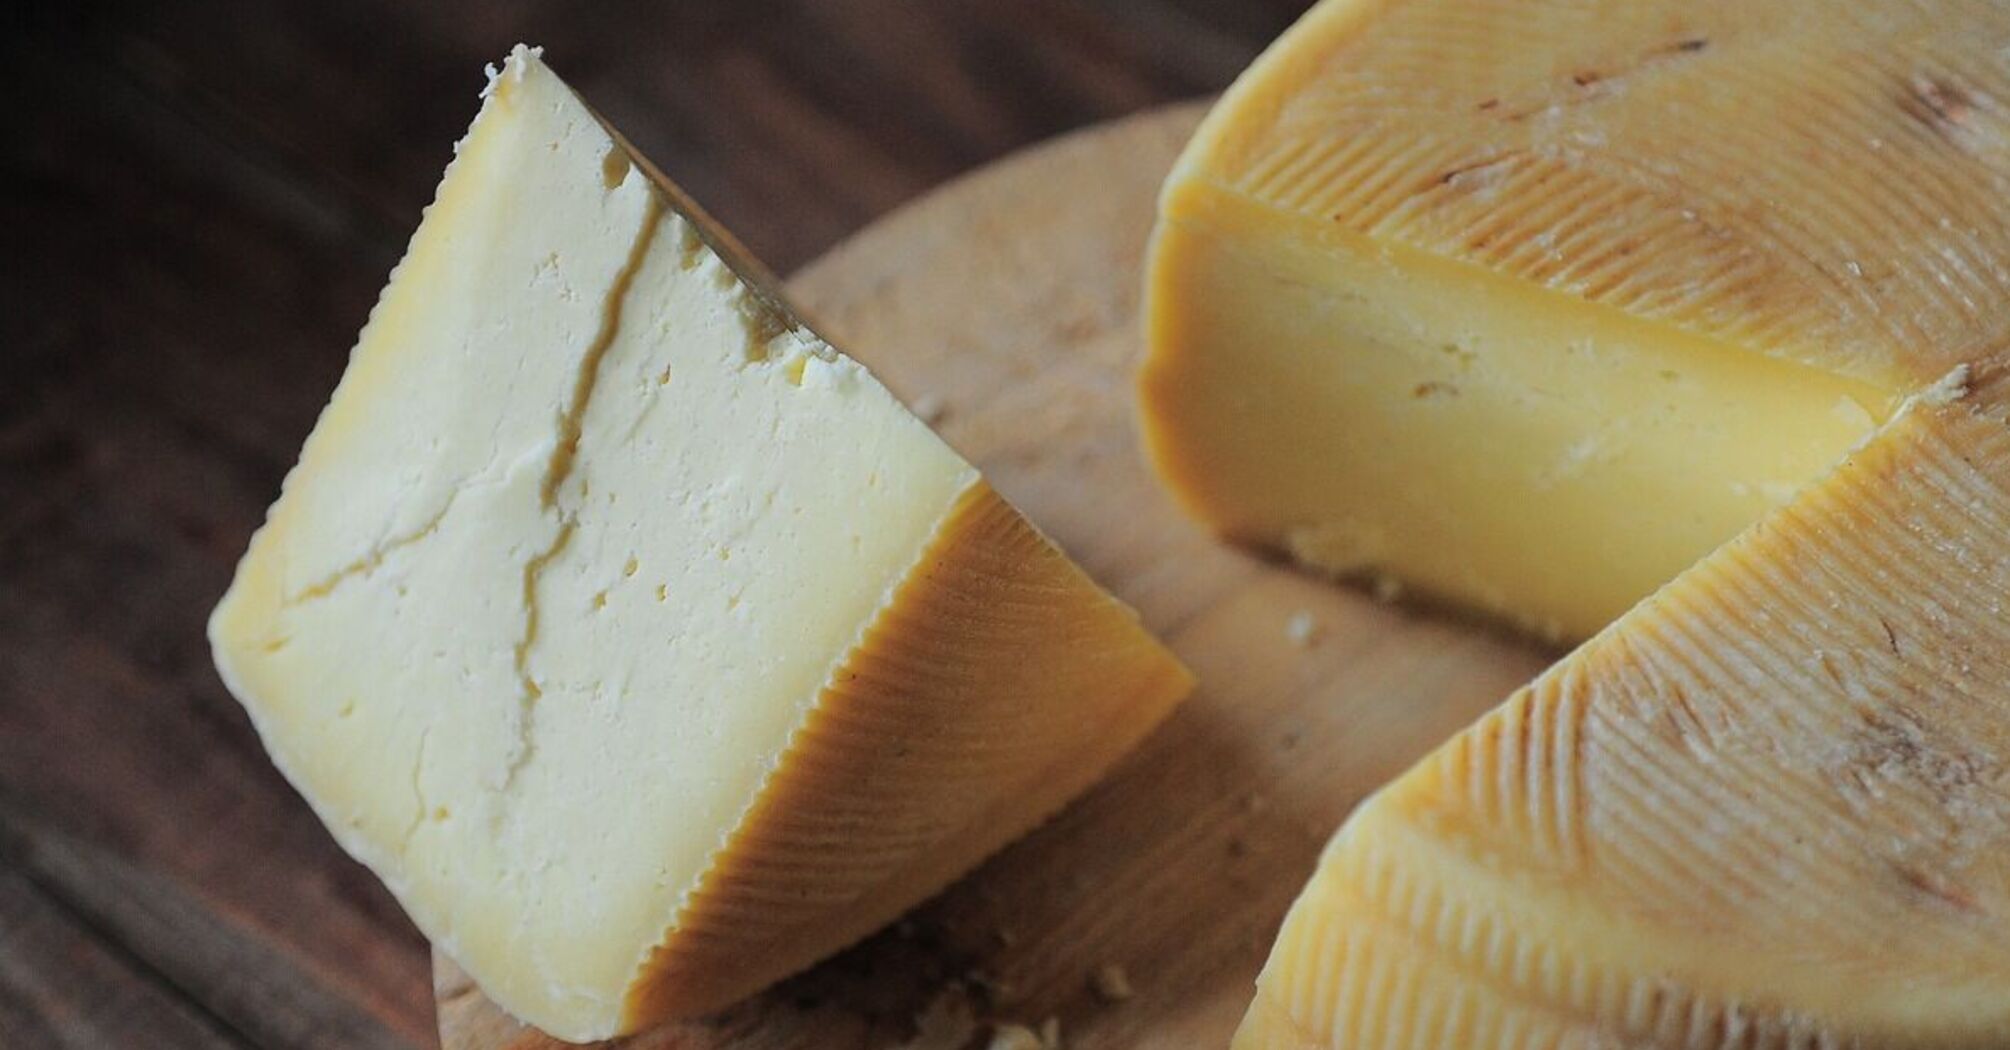 Не спішіть класти у кошик: як швидко оцінити якість сиру перед покупкою